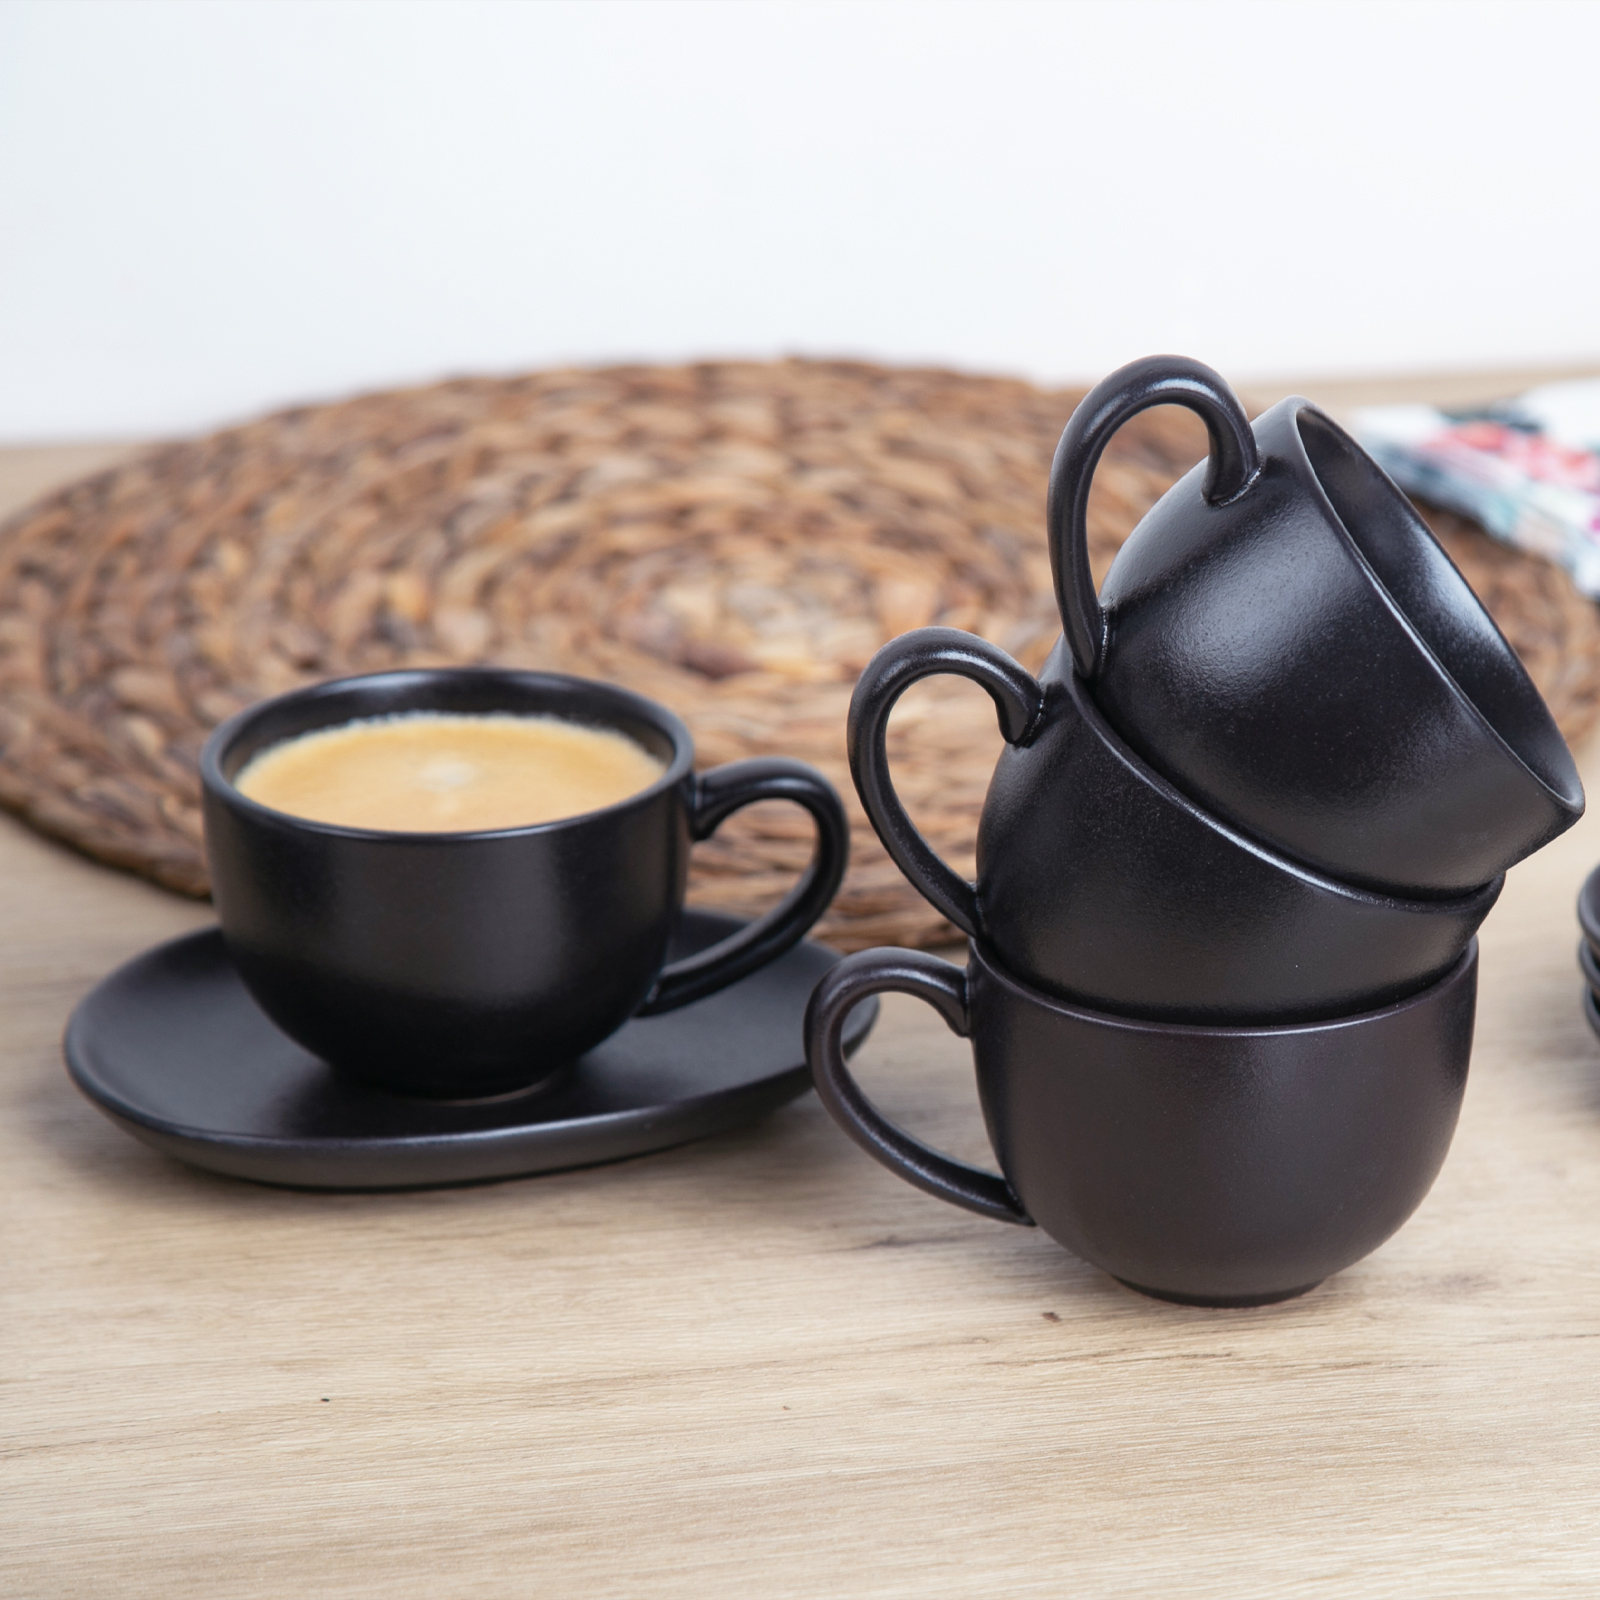 Cappuccino Cups & Saucers (6oz) - Set of 2 – Barista Basics